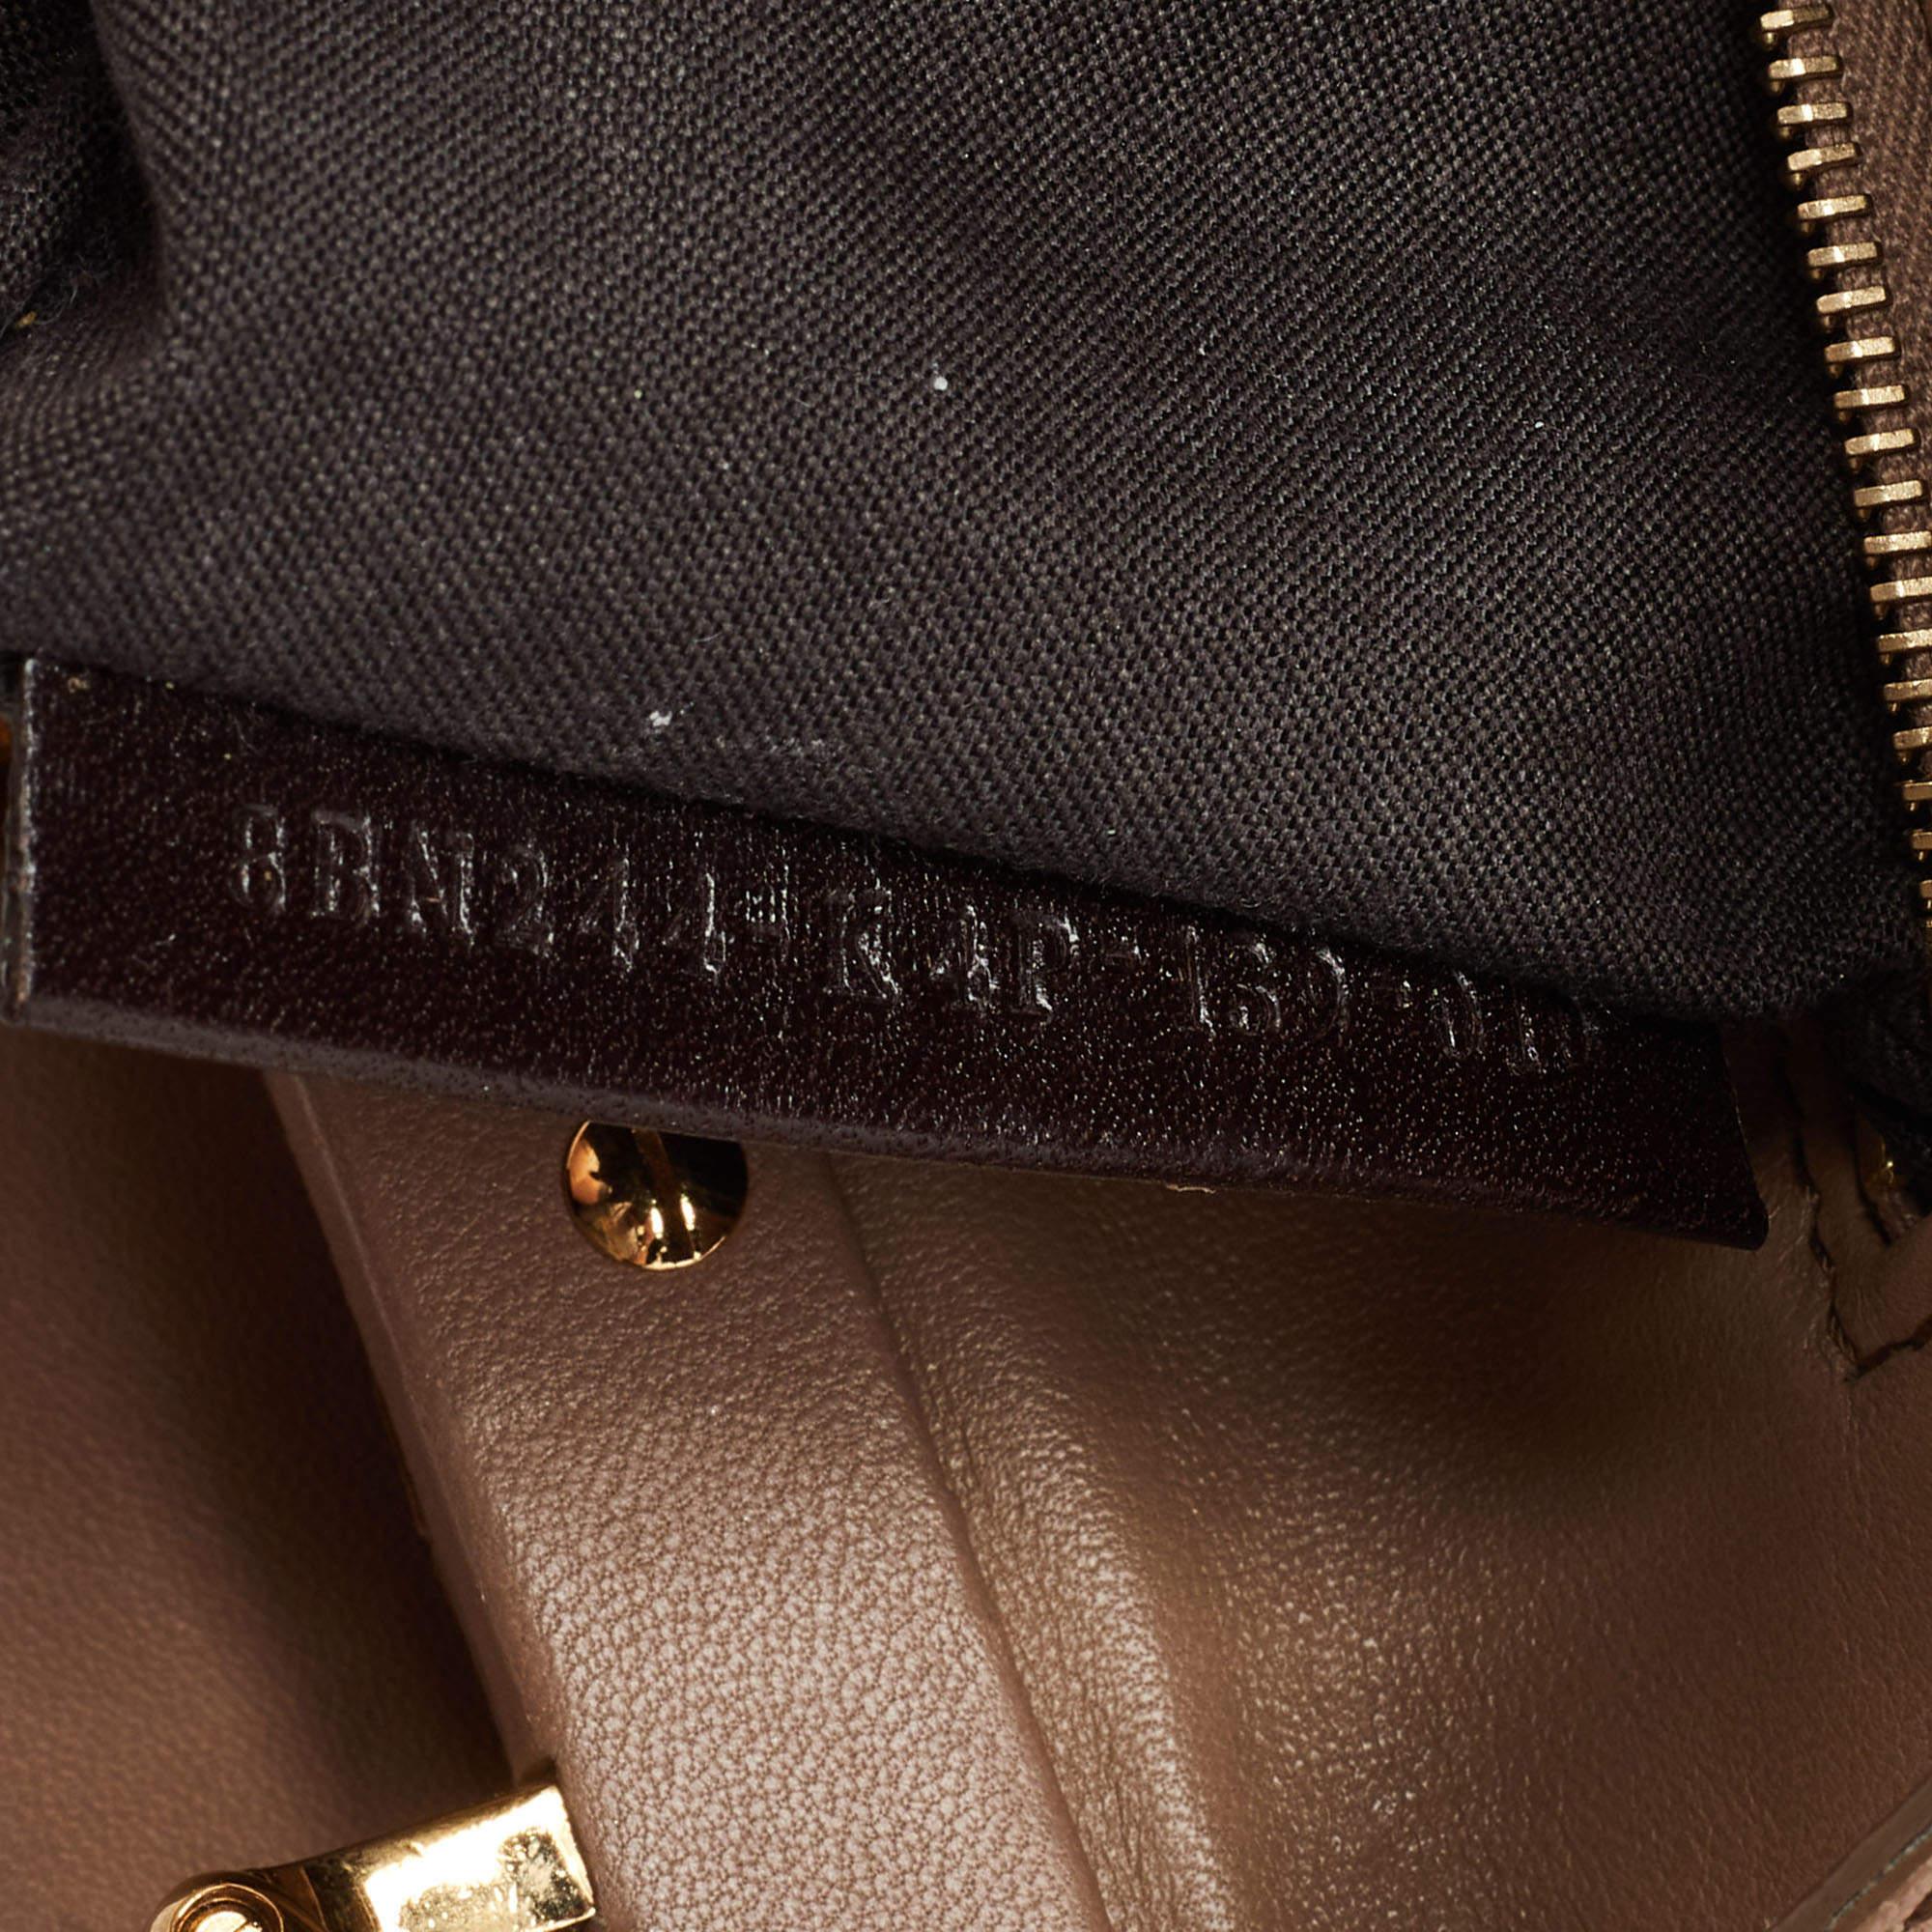 Fendi Beige Leather Mini Peekaboo Top Handle Bag 2